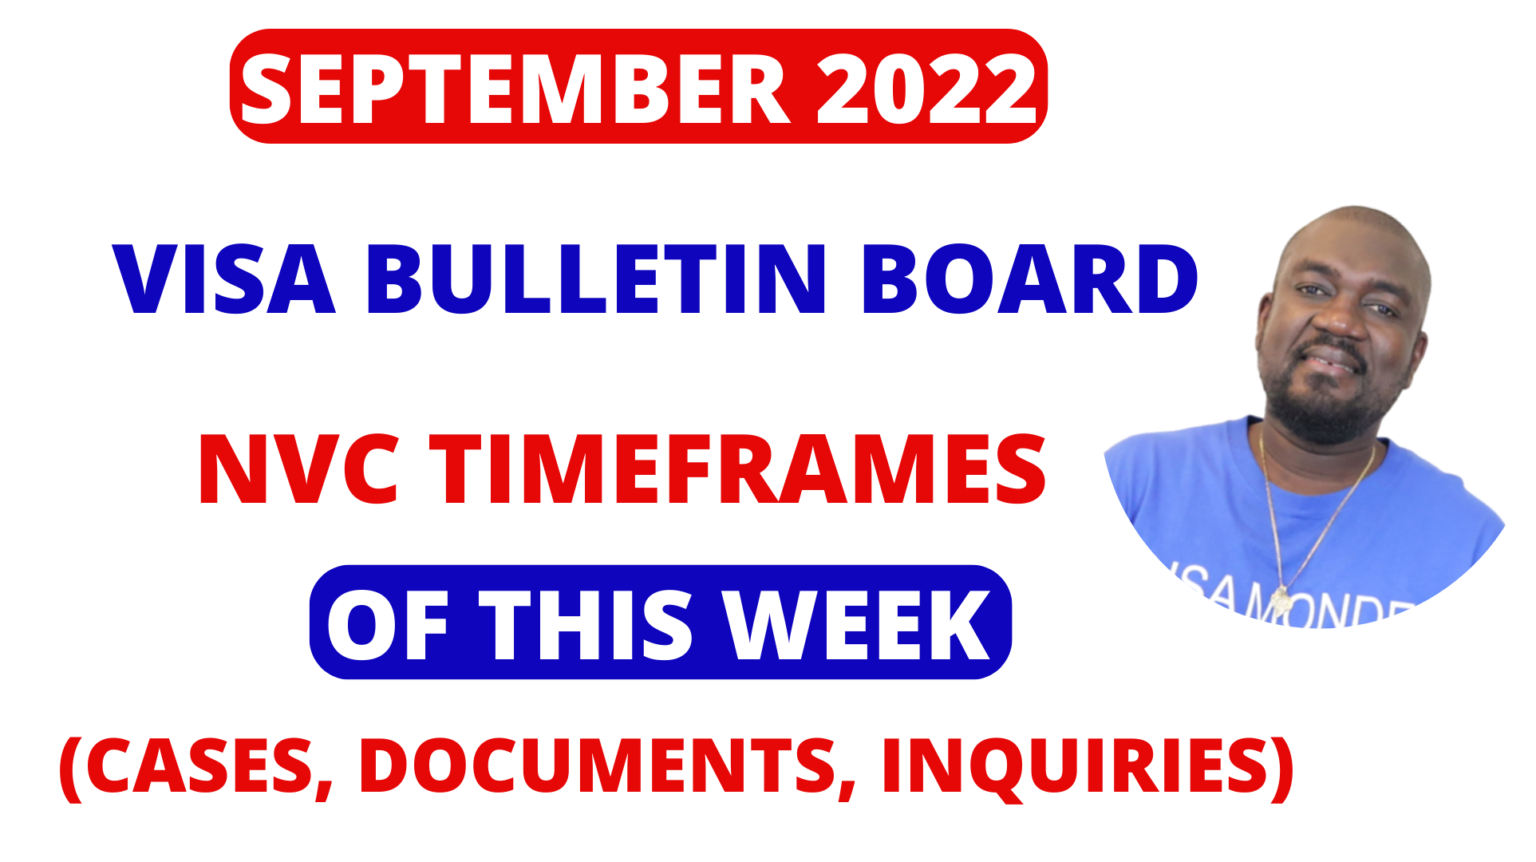 SEPTEMBER 2022 VISA BULLETIN NVC UPDATE OF THIS WEEK 09/06 /2022